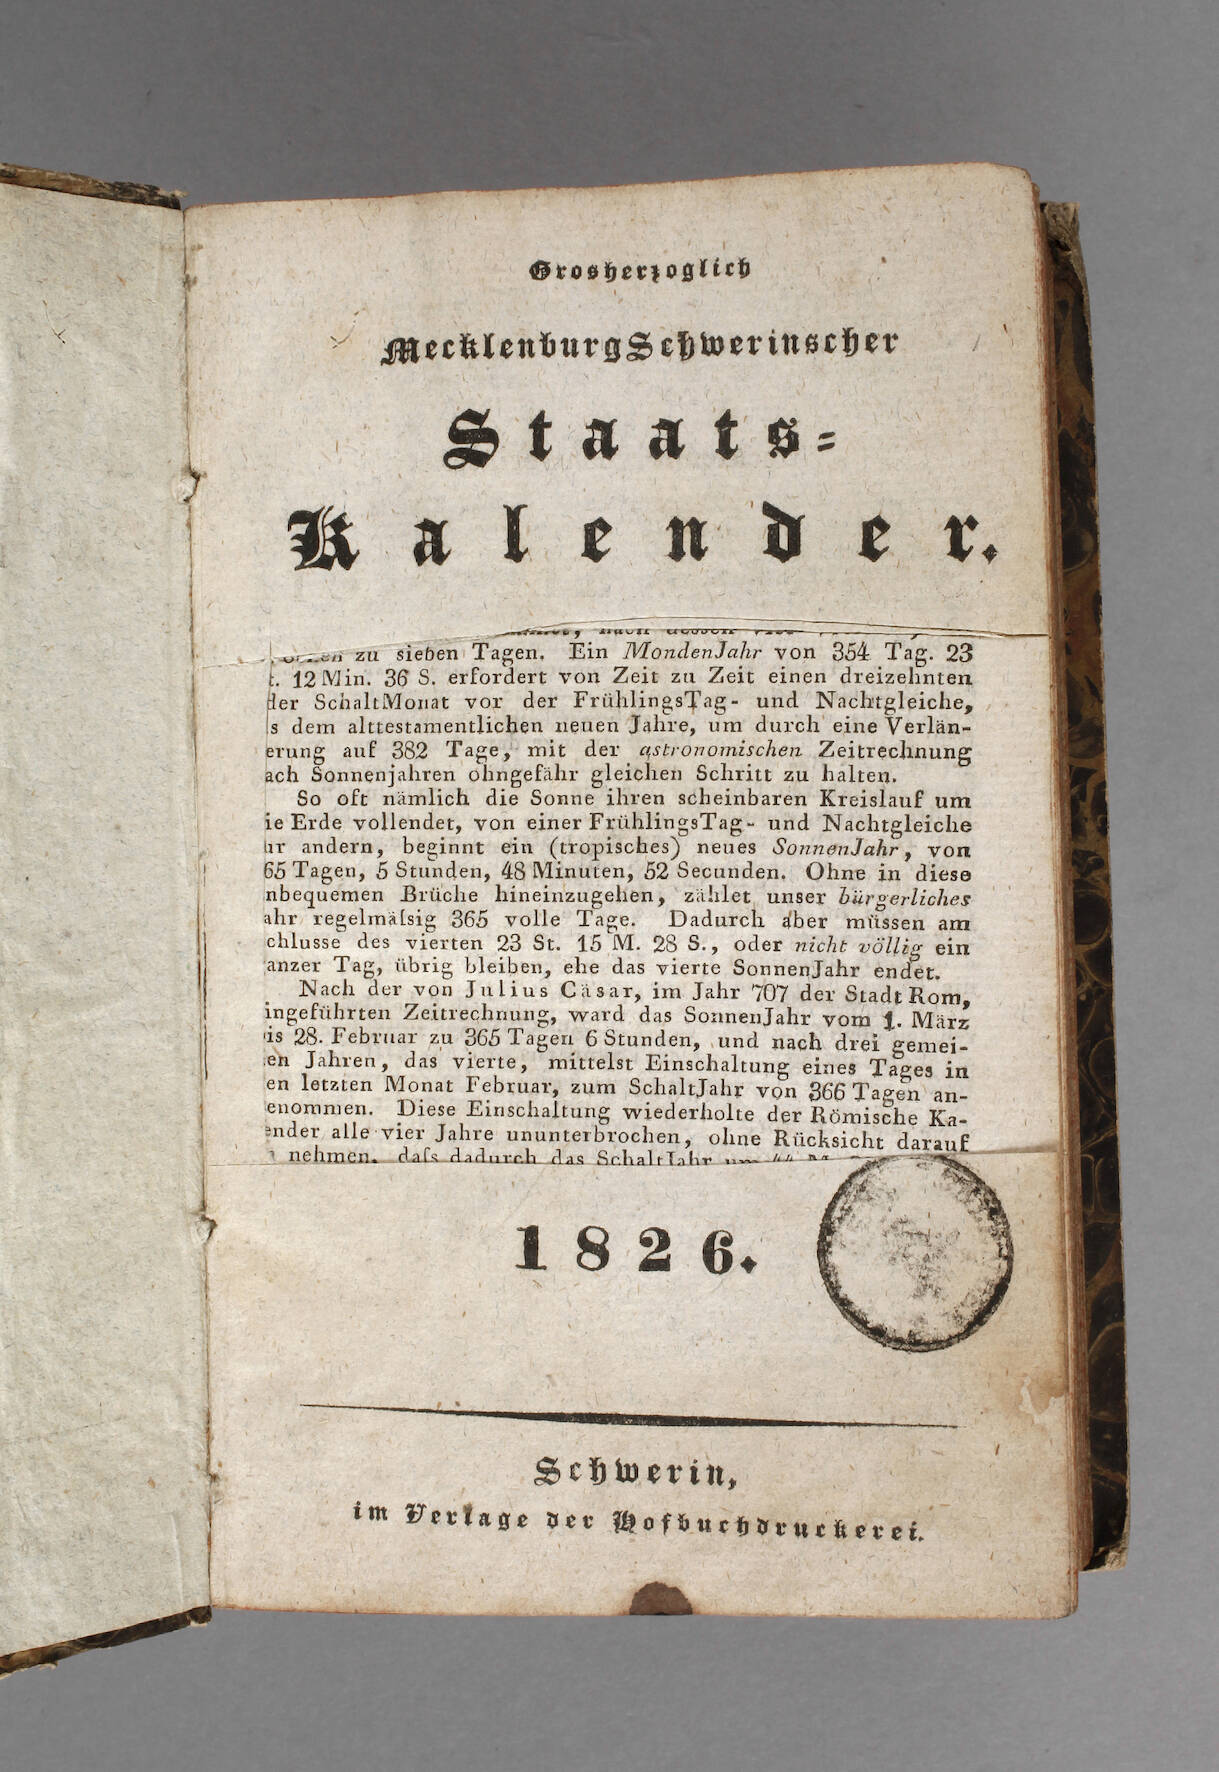 Staatskalender Mecklenburg-Schwerin 1826